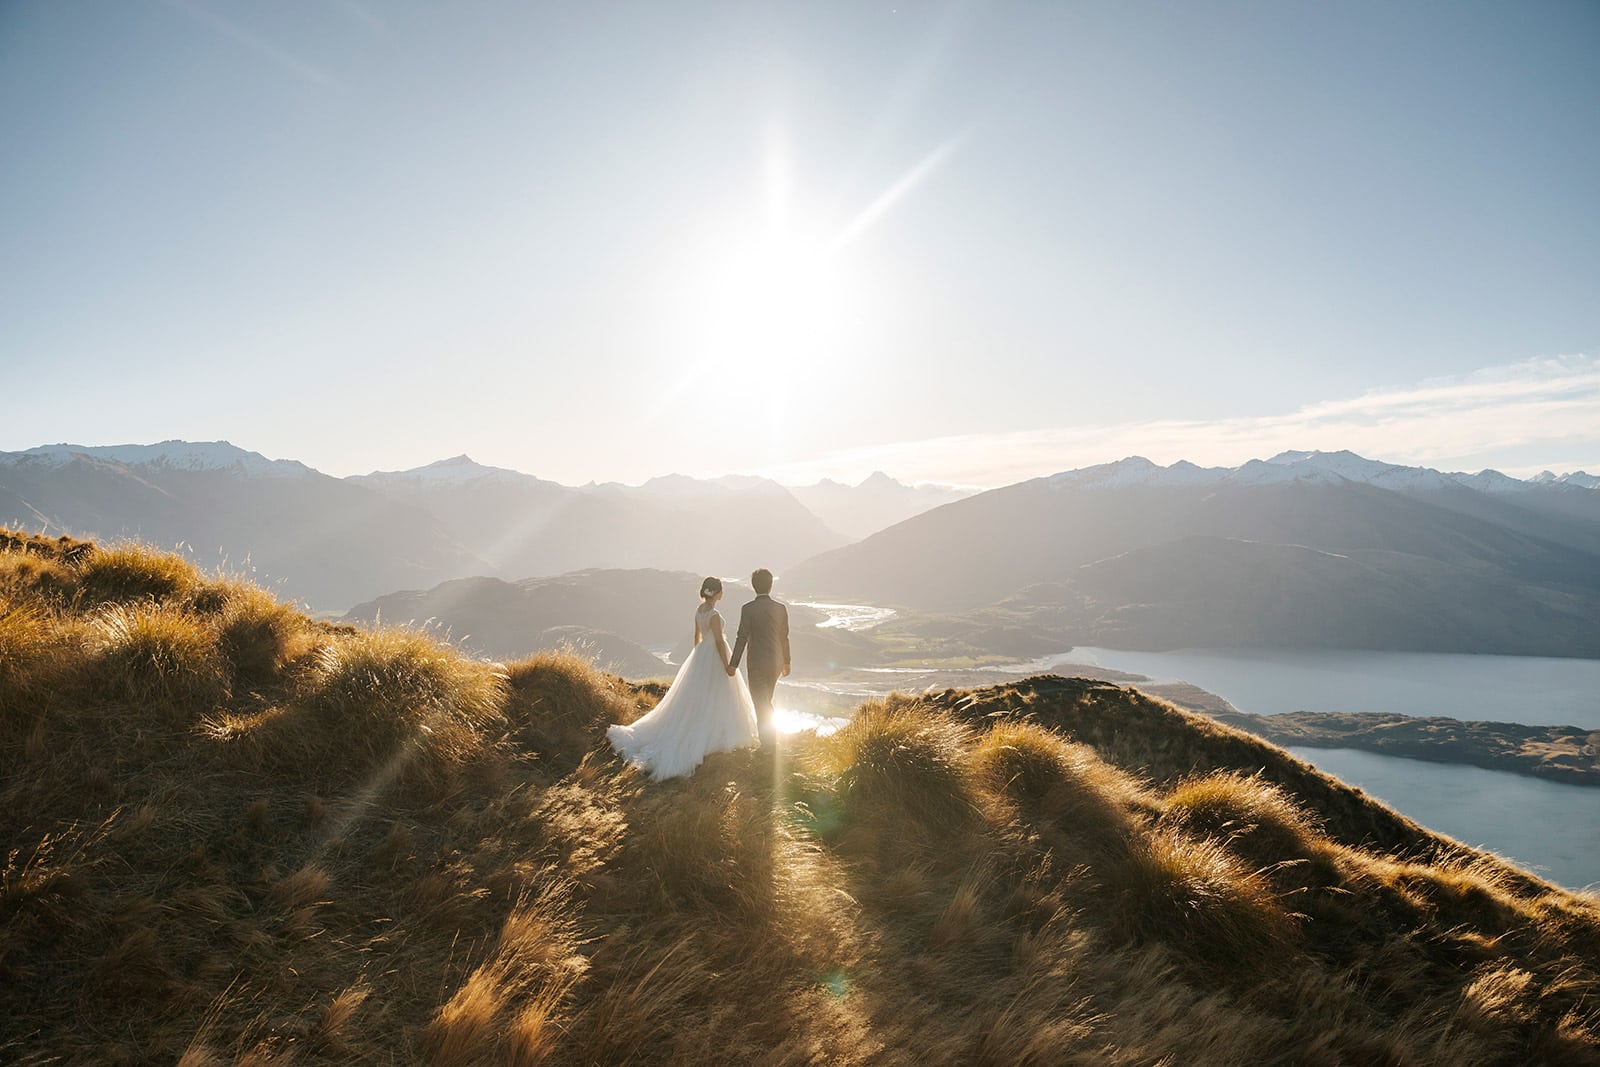 Heli Wedding on coromandel Peak in New Zealand